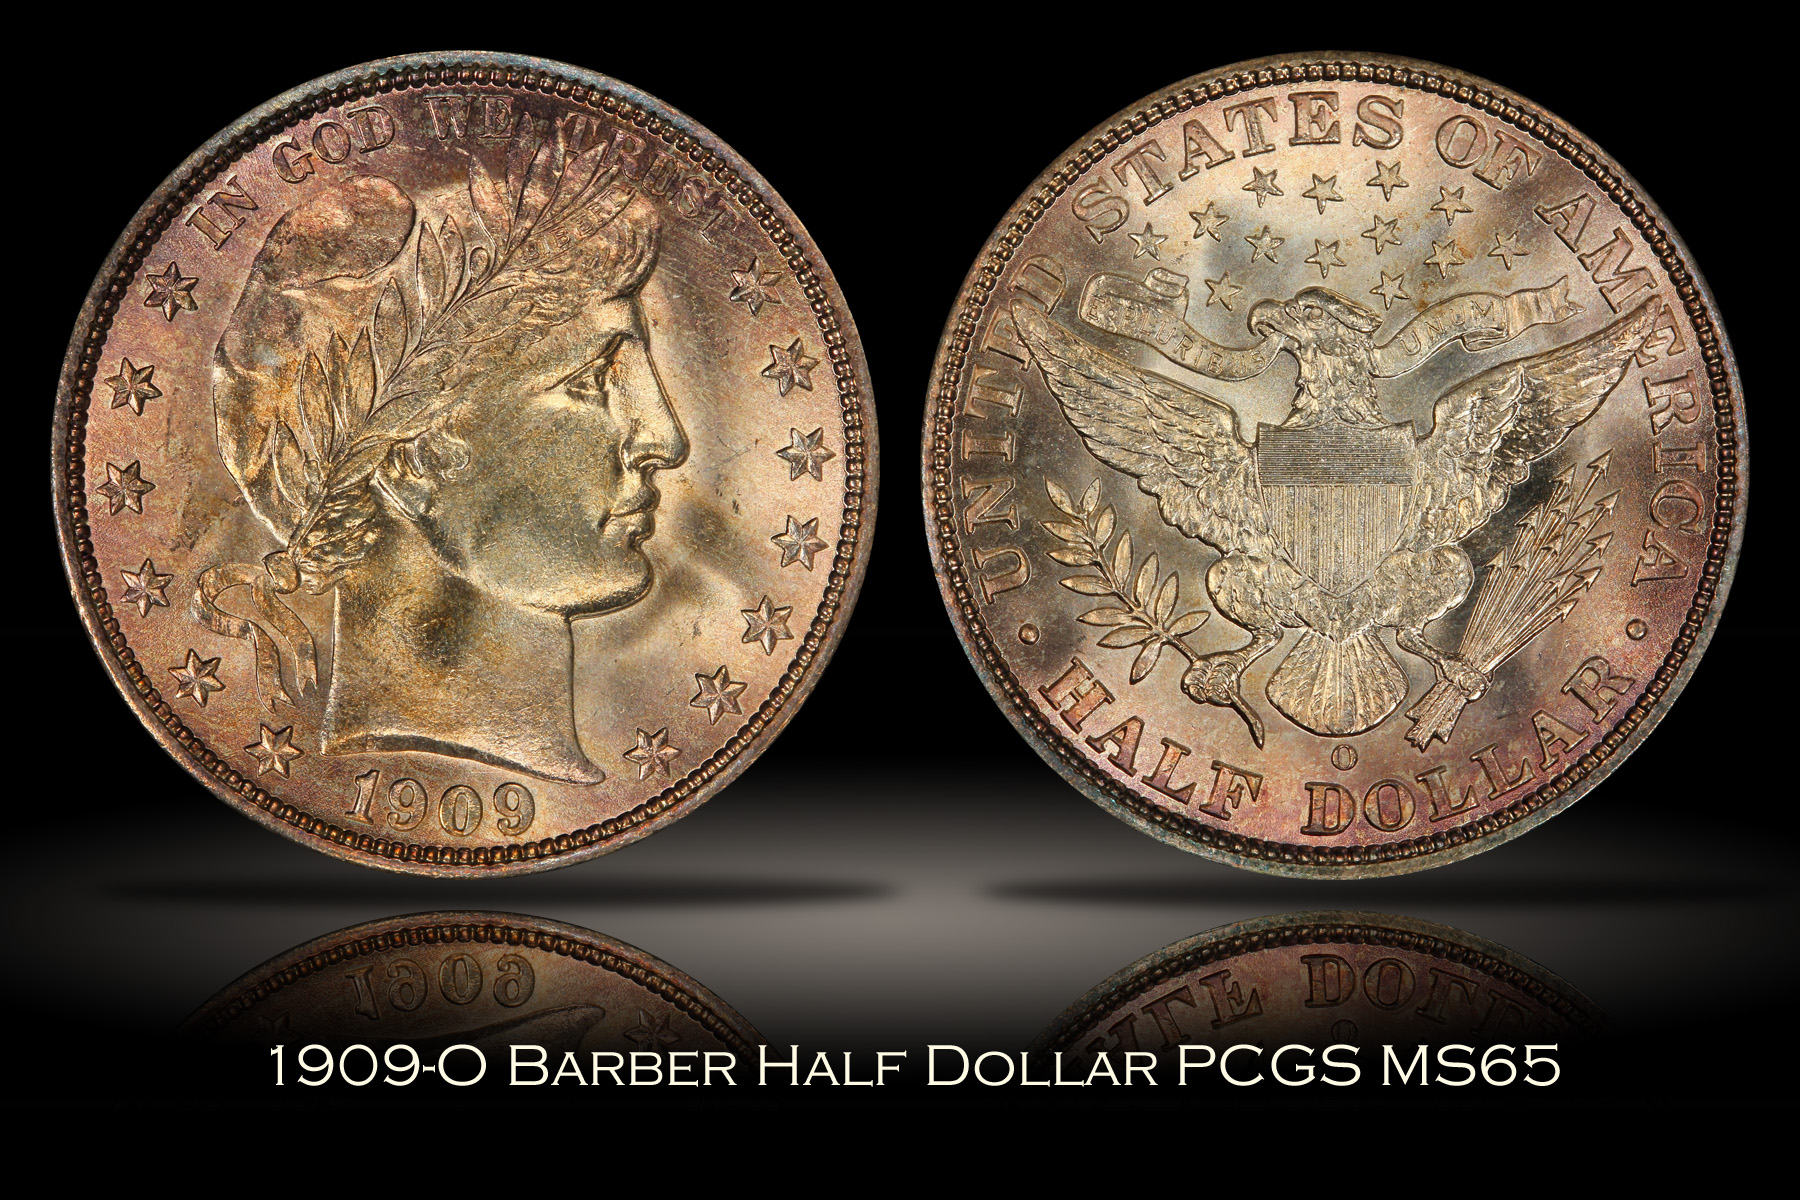 1909-O Barber Half PCGS MS65